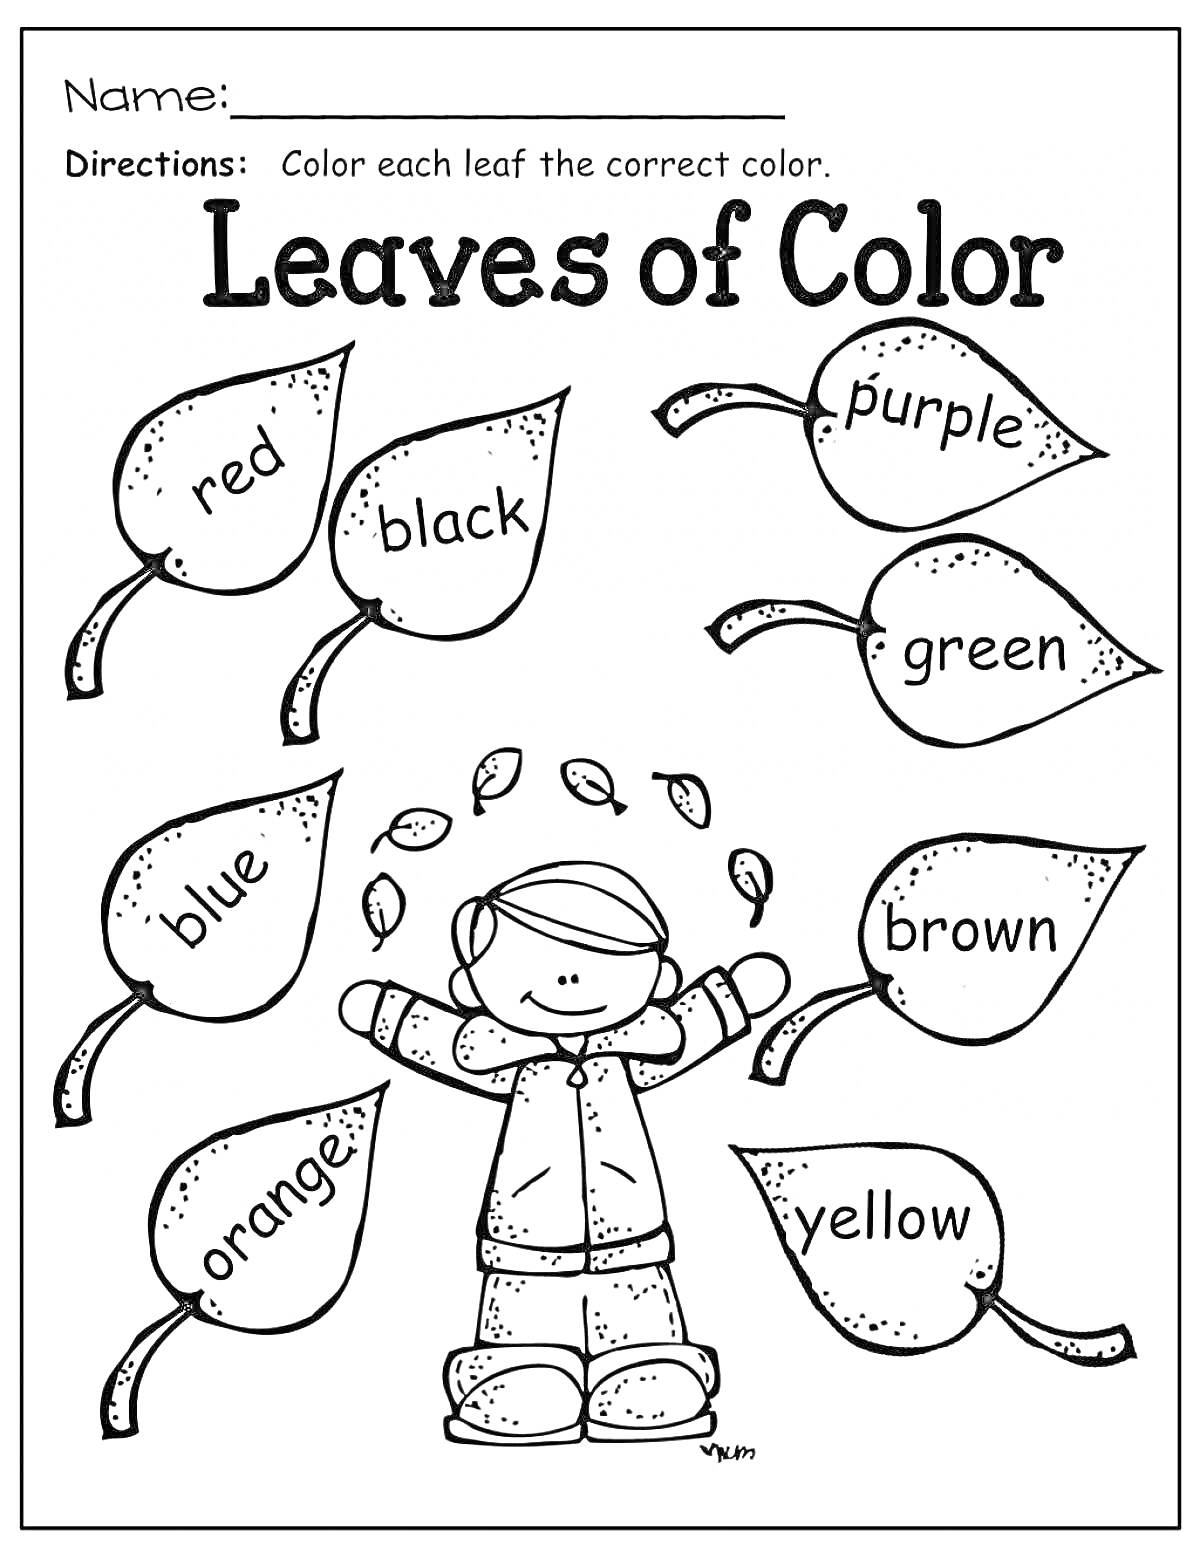 Раскраска листьев, лист красный, лист черный, лист фиолетовый, лист зеленый, лист синий, лист коричневый, лист оранжевый, лист желтый, ребенок под листьями